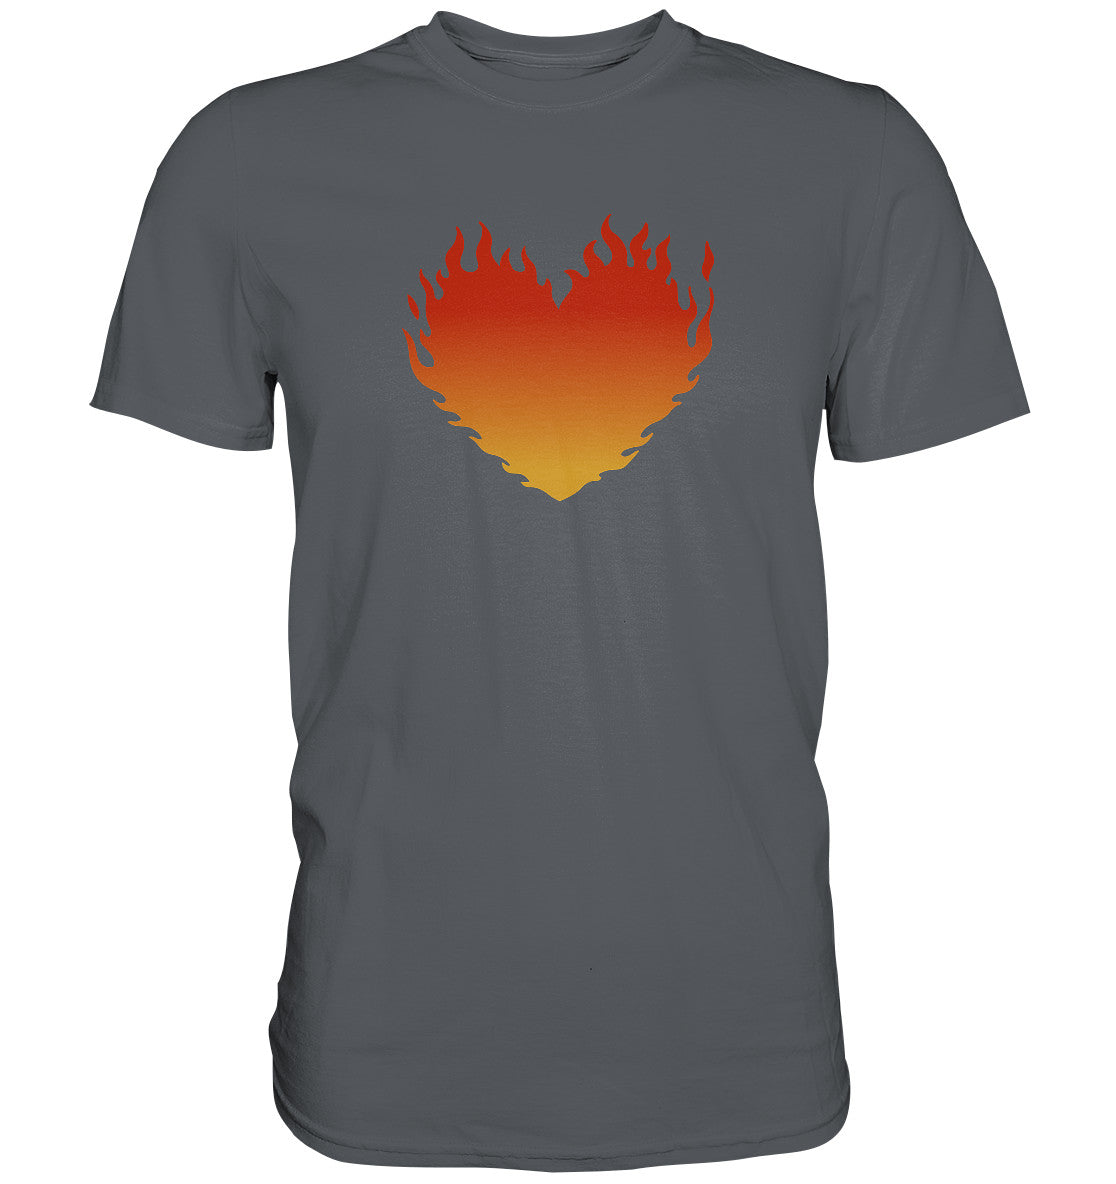 Lk 24,32 - Brennendes Herz - Premium Shirt